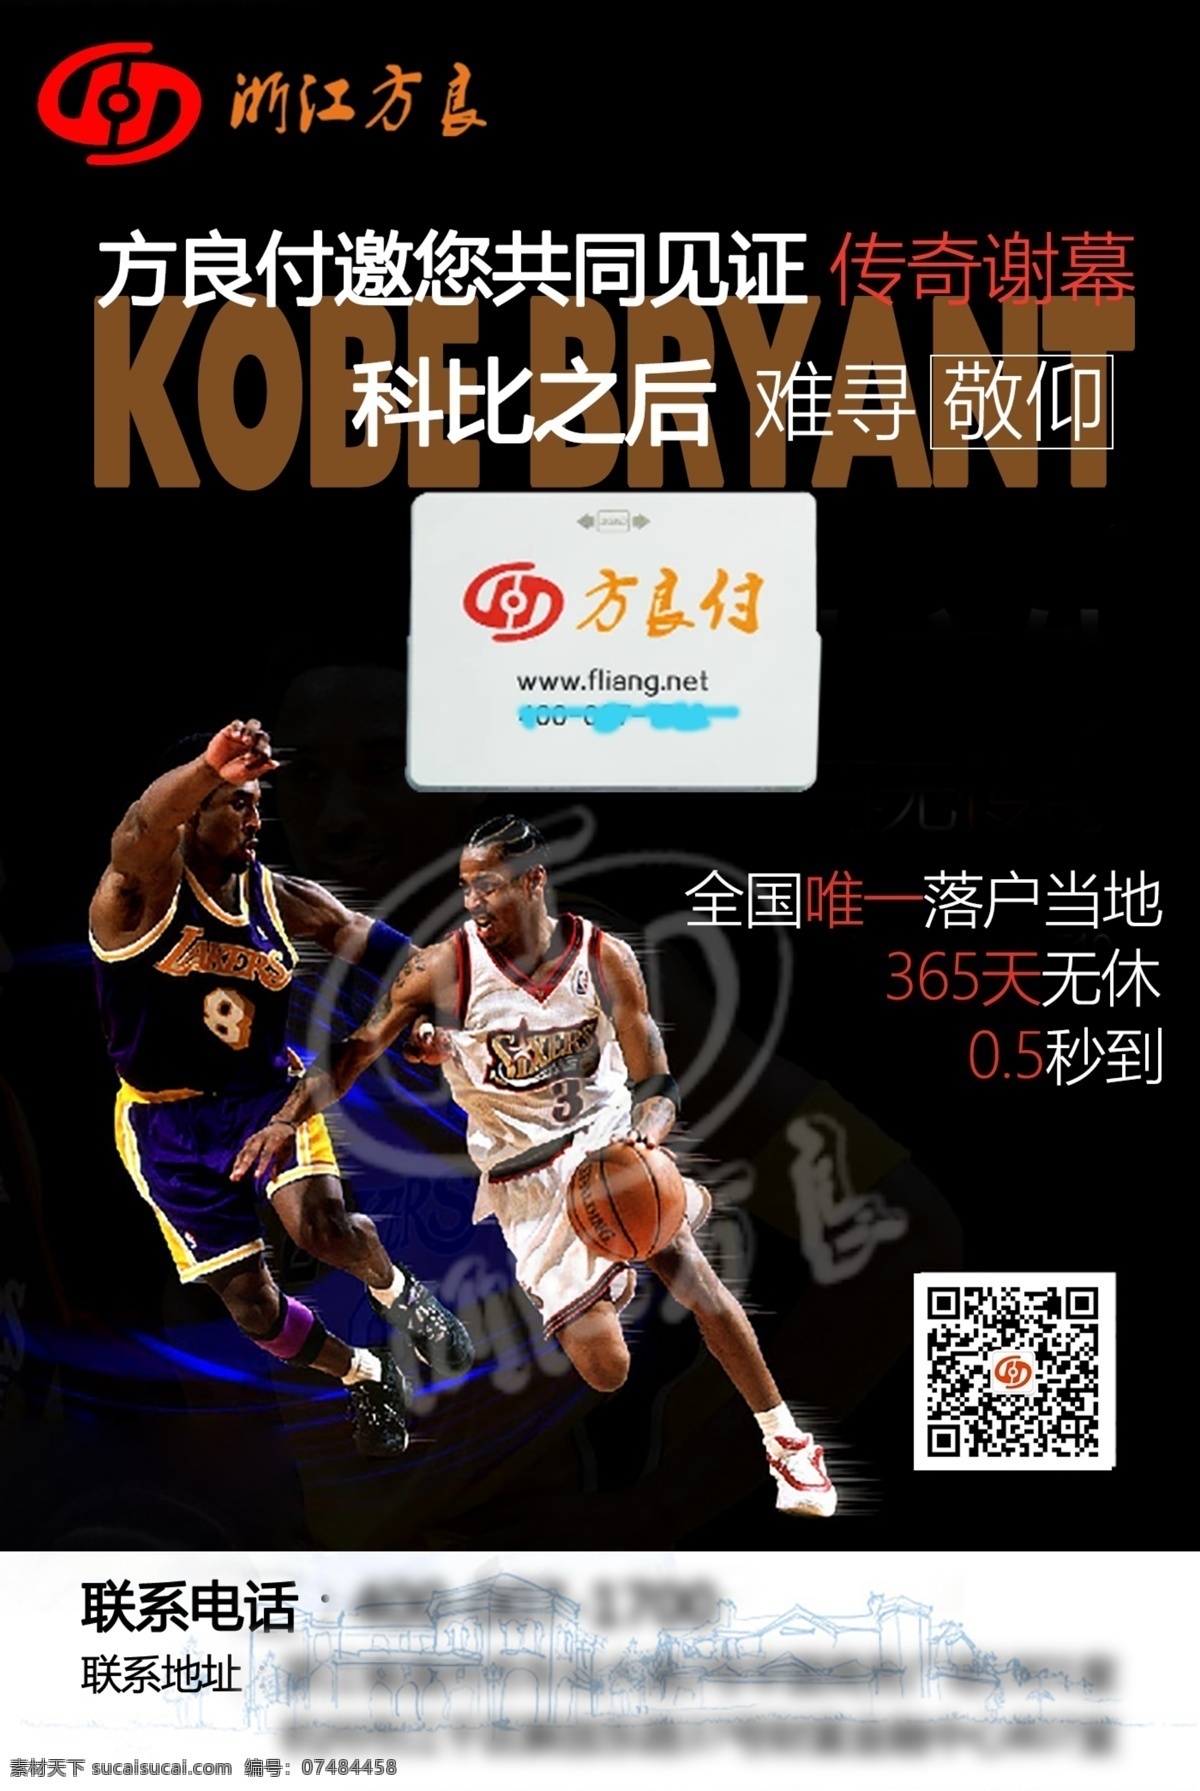 科比 pos 产品 海报 图 pos机 篮球 广告 推广 黑色